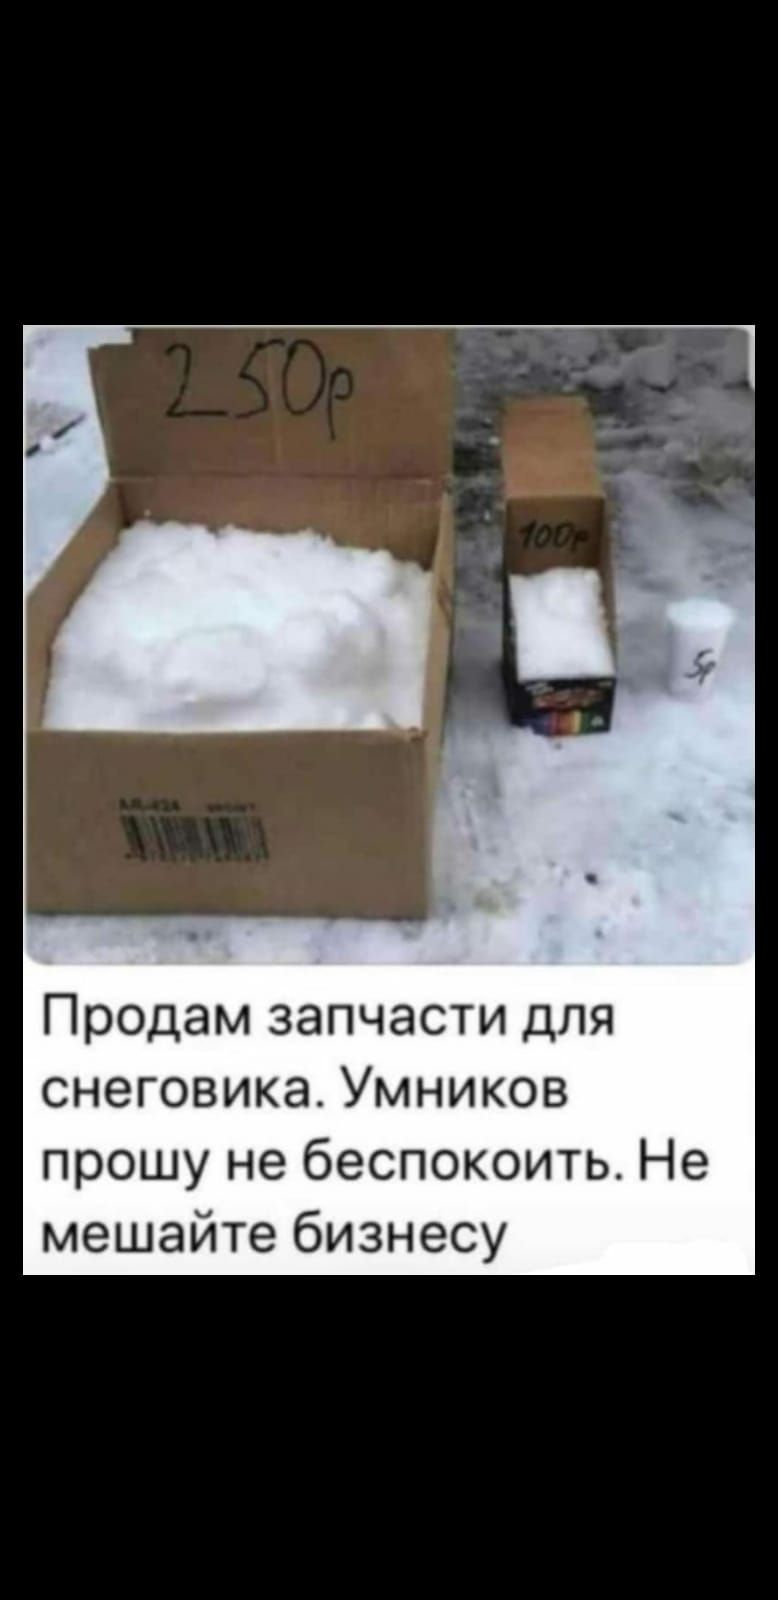 Продам запчасти для снеговика Умников прошу не беспокоить Не мешайте бизнесу